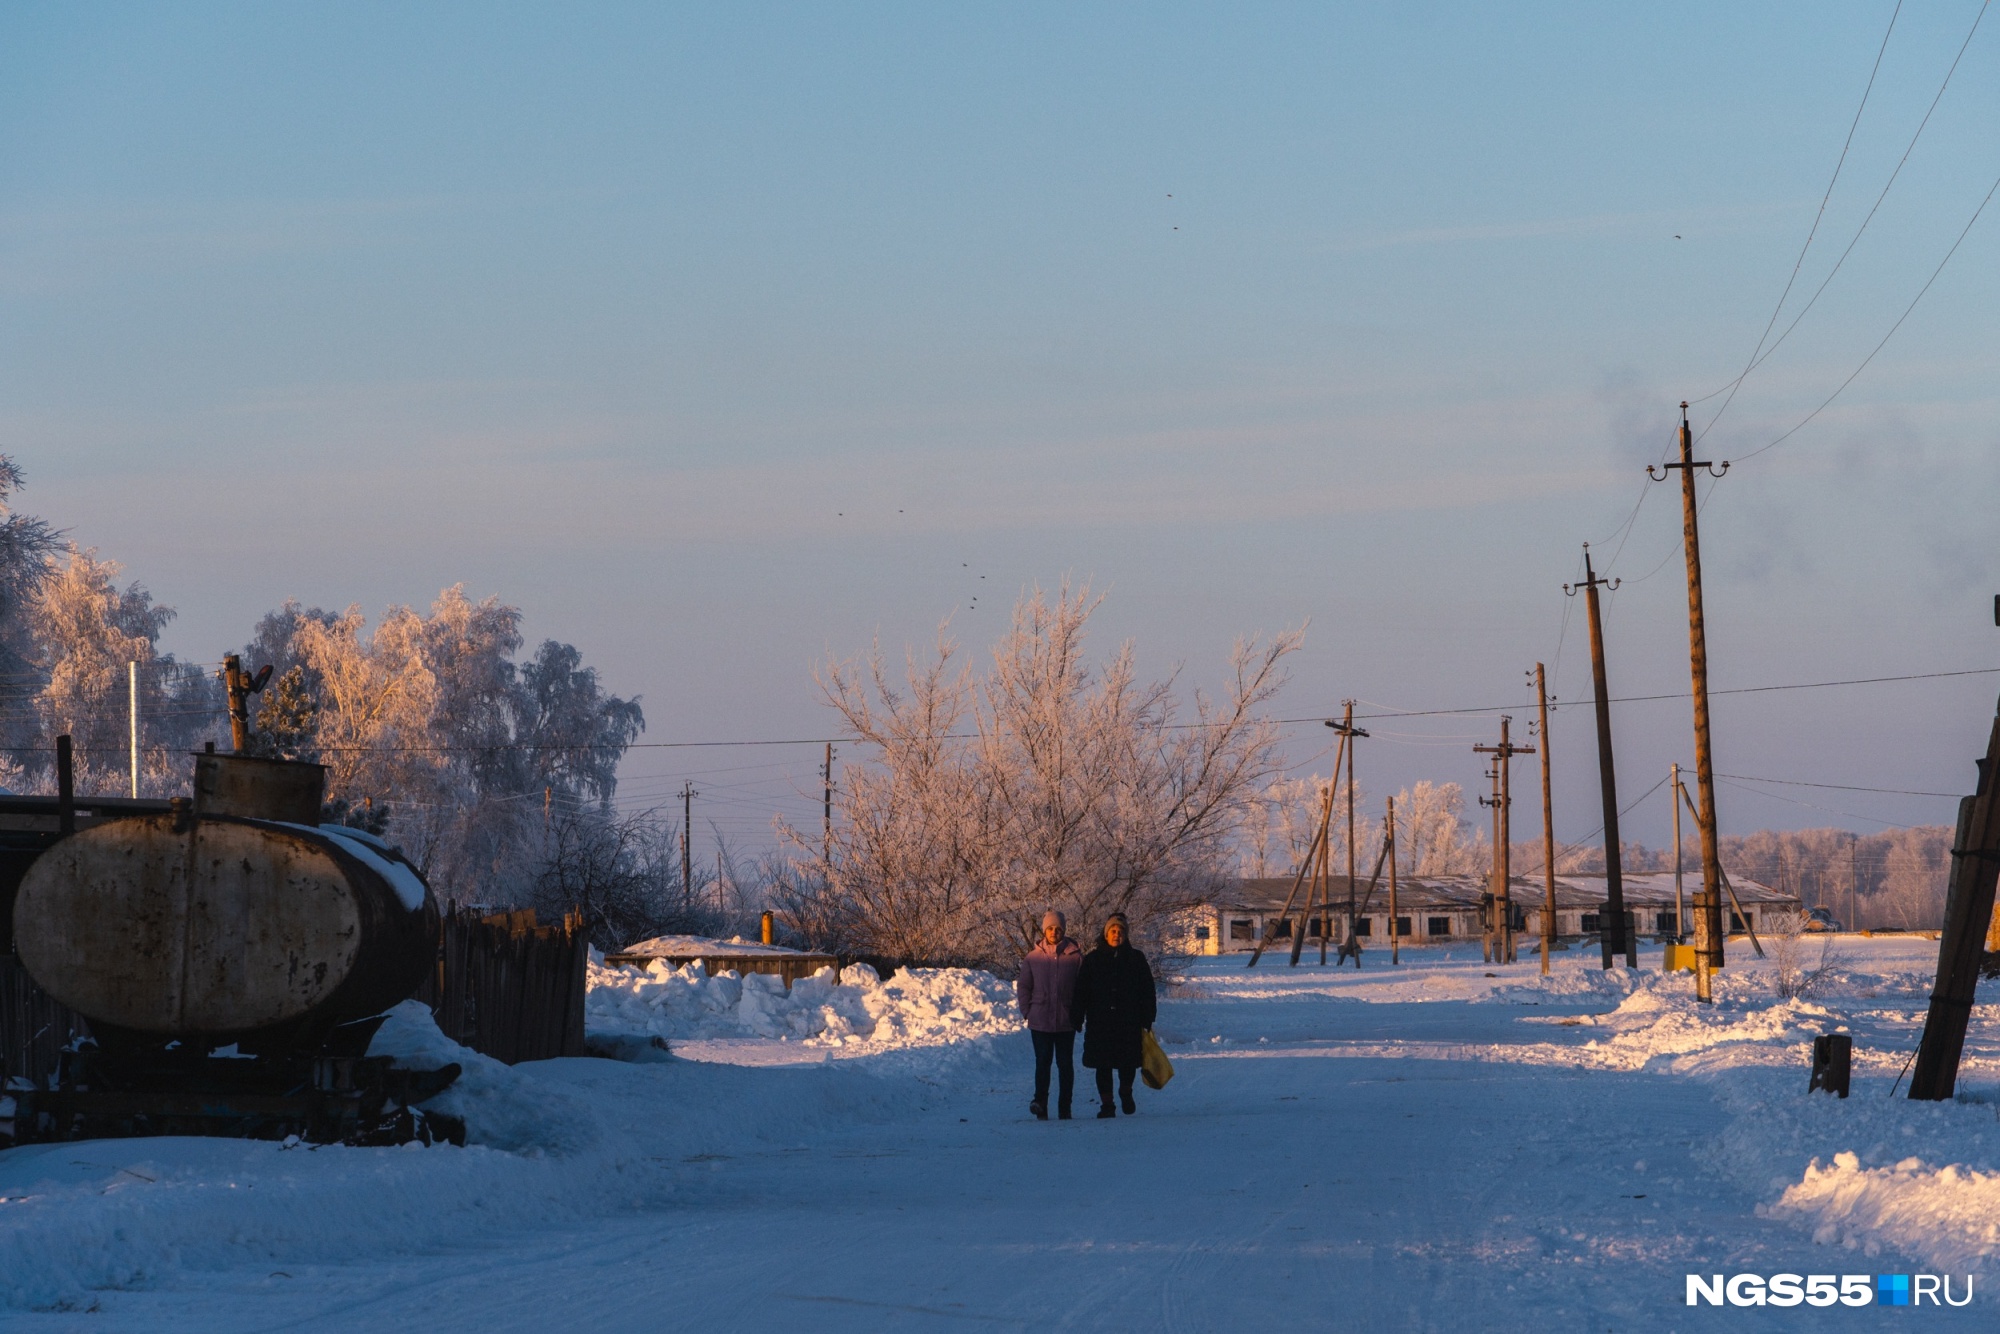 Юрьевка — небольшое поселение на границе с Казахстаном